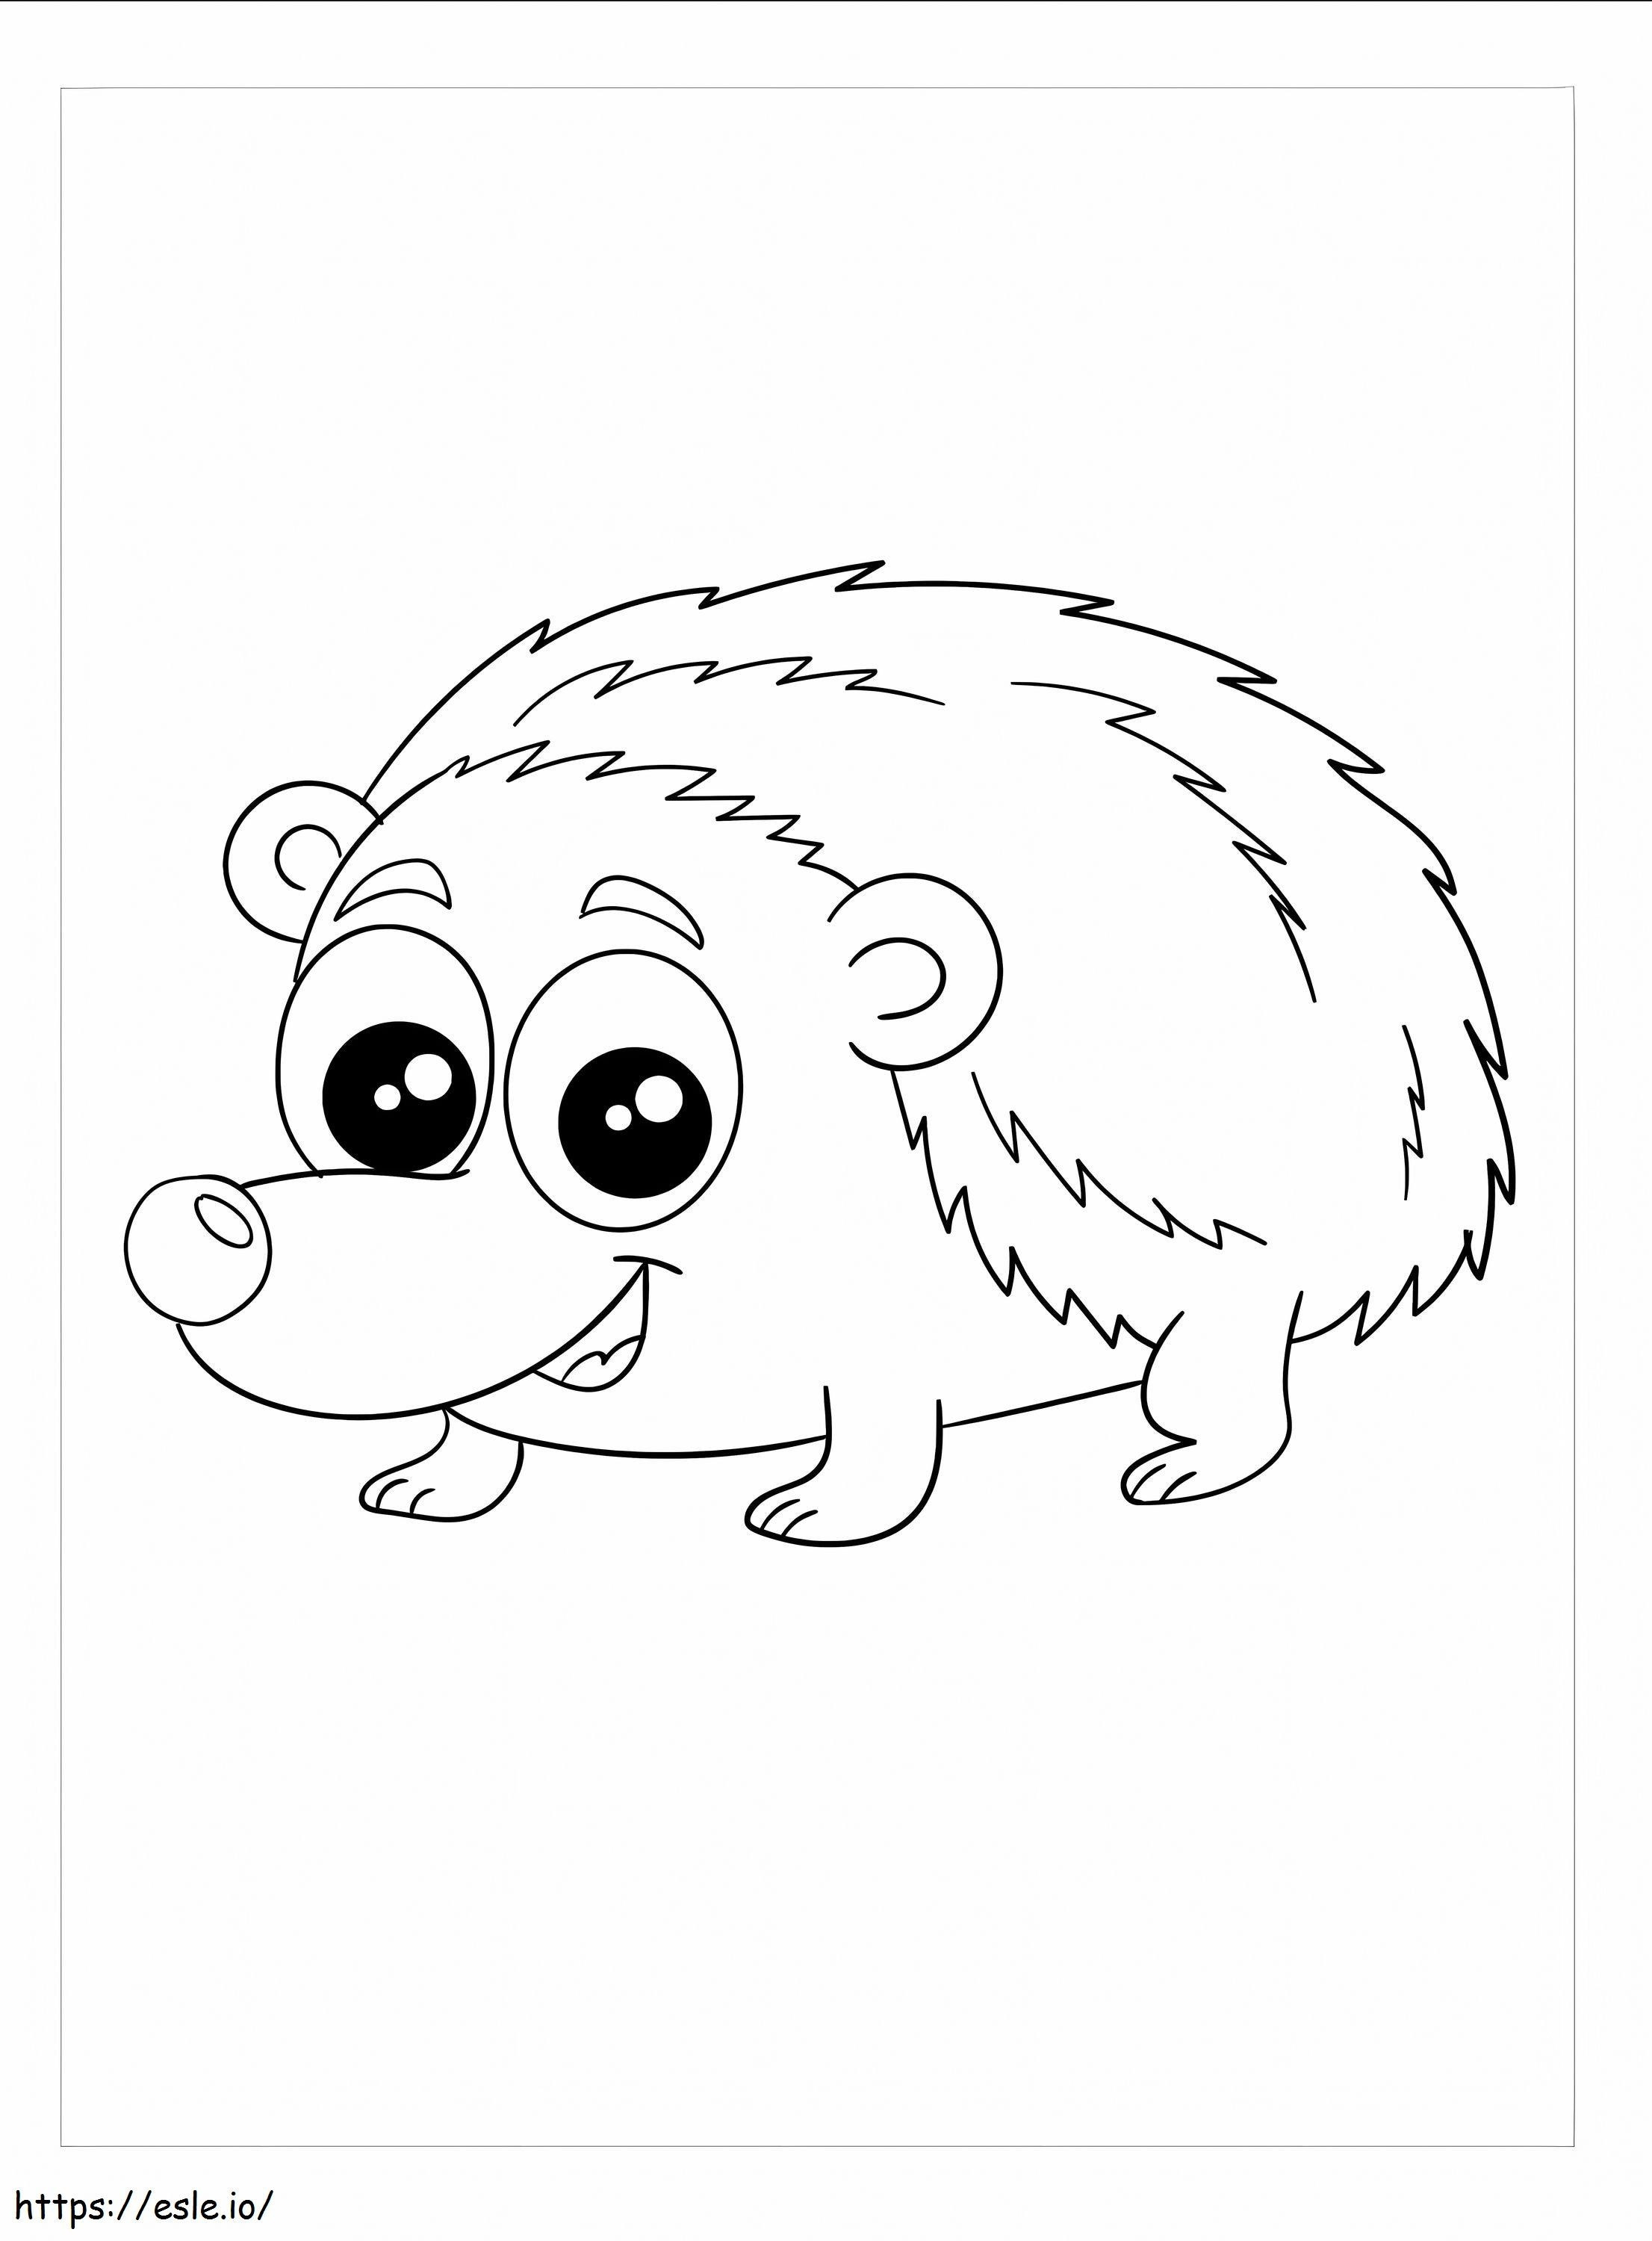 Nice Hedgehog coloring page